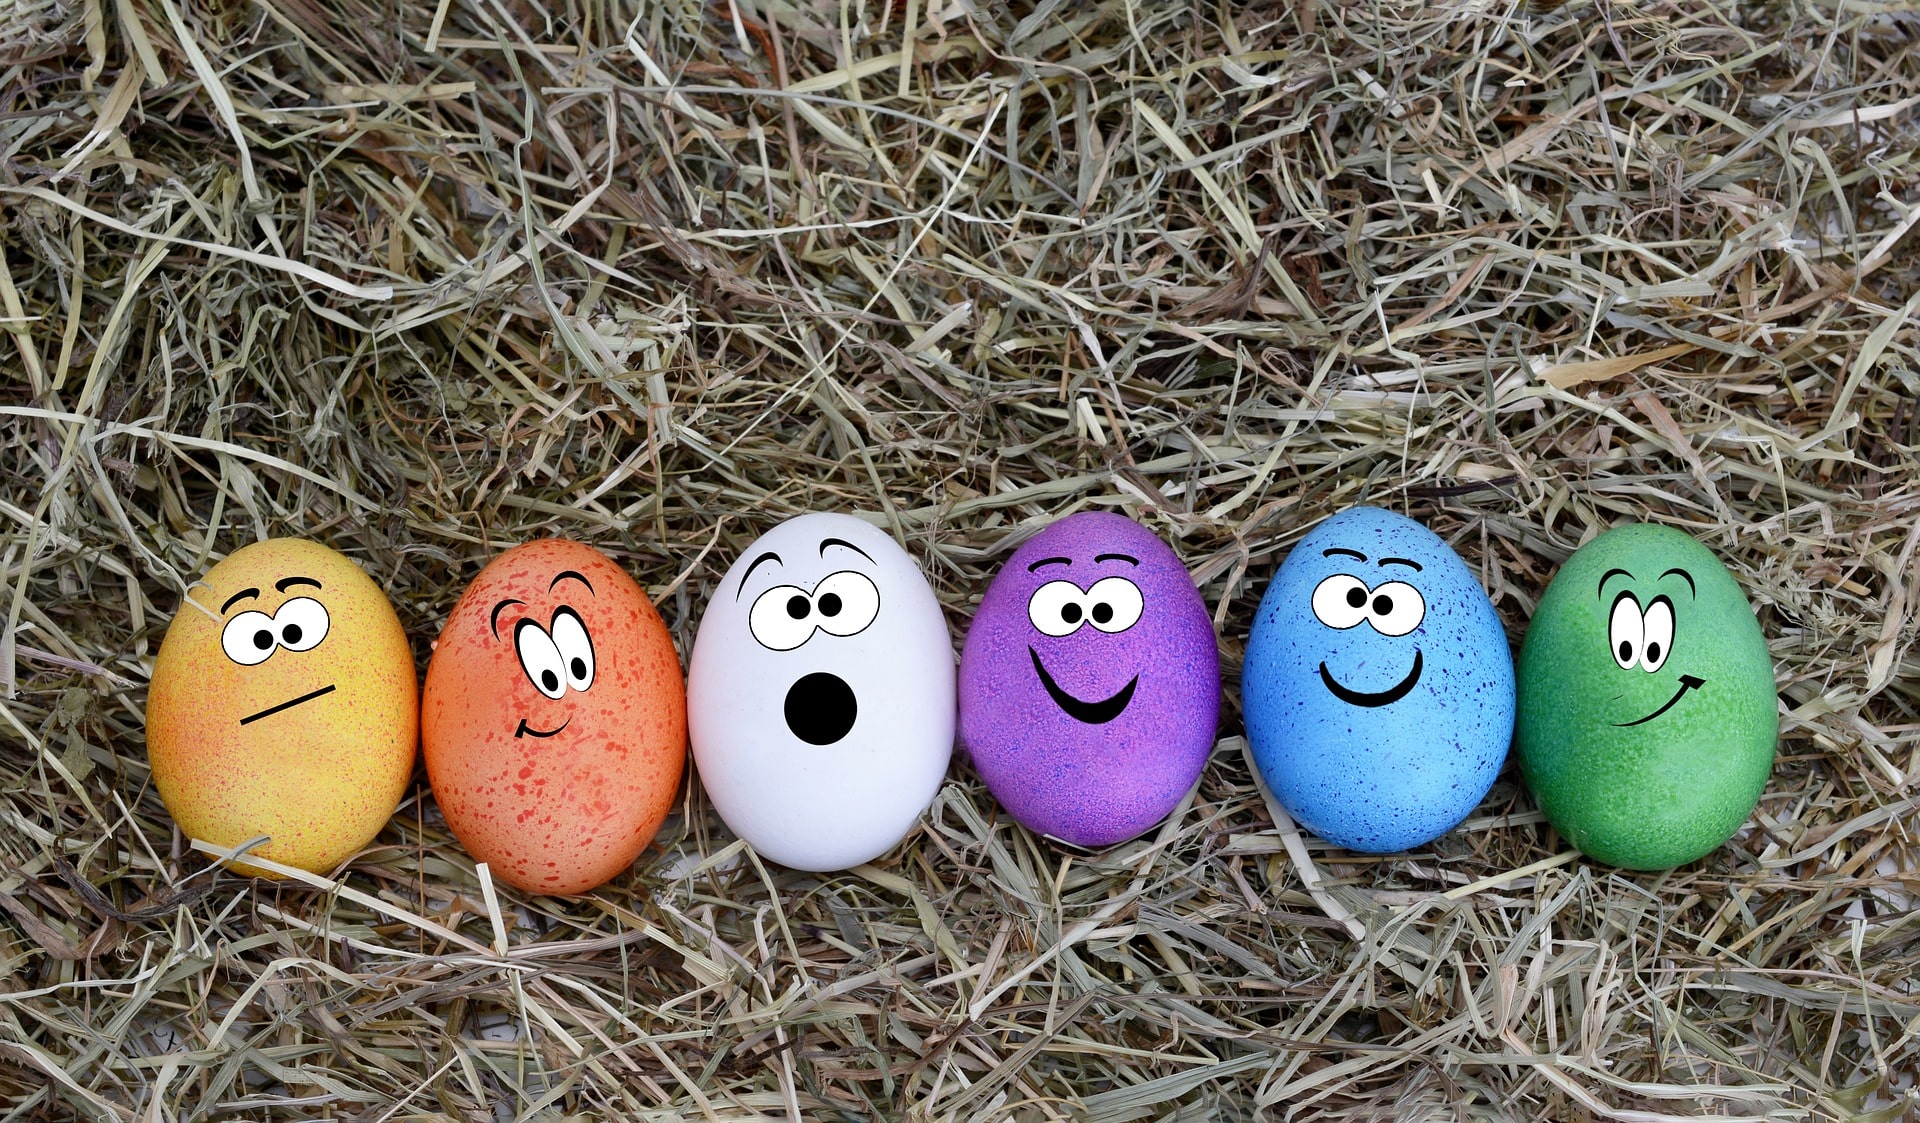 painted easter eggs lying in hay